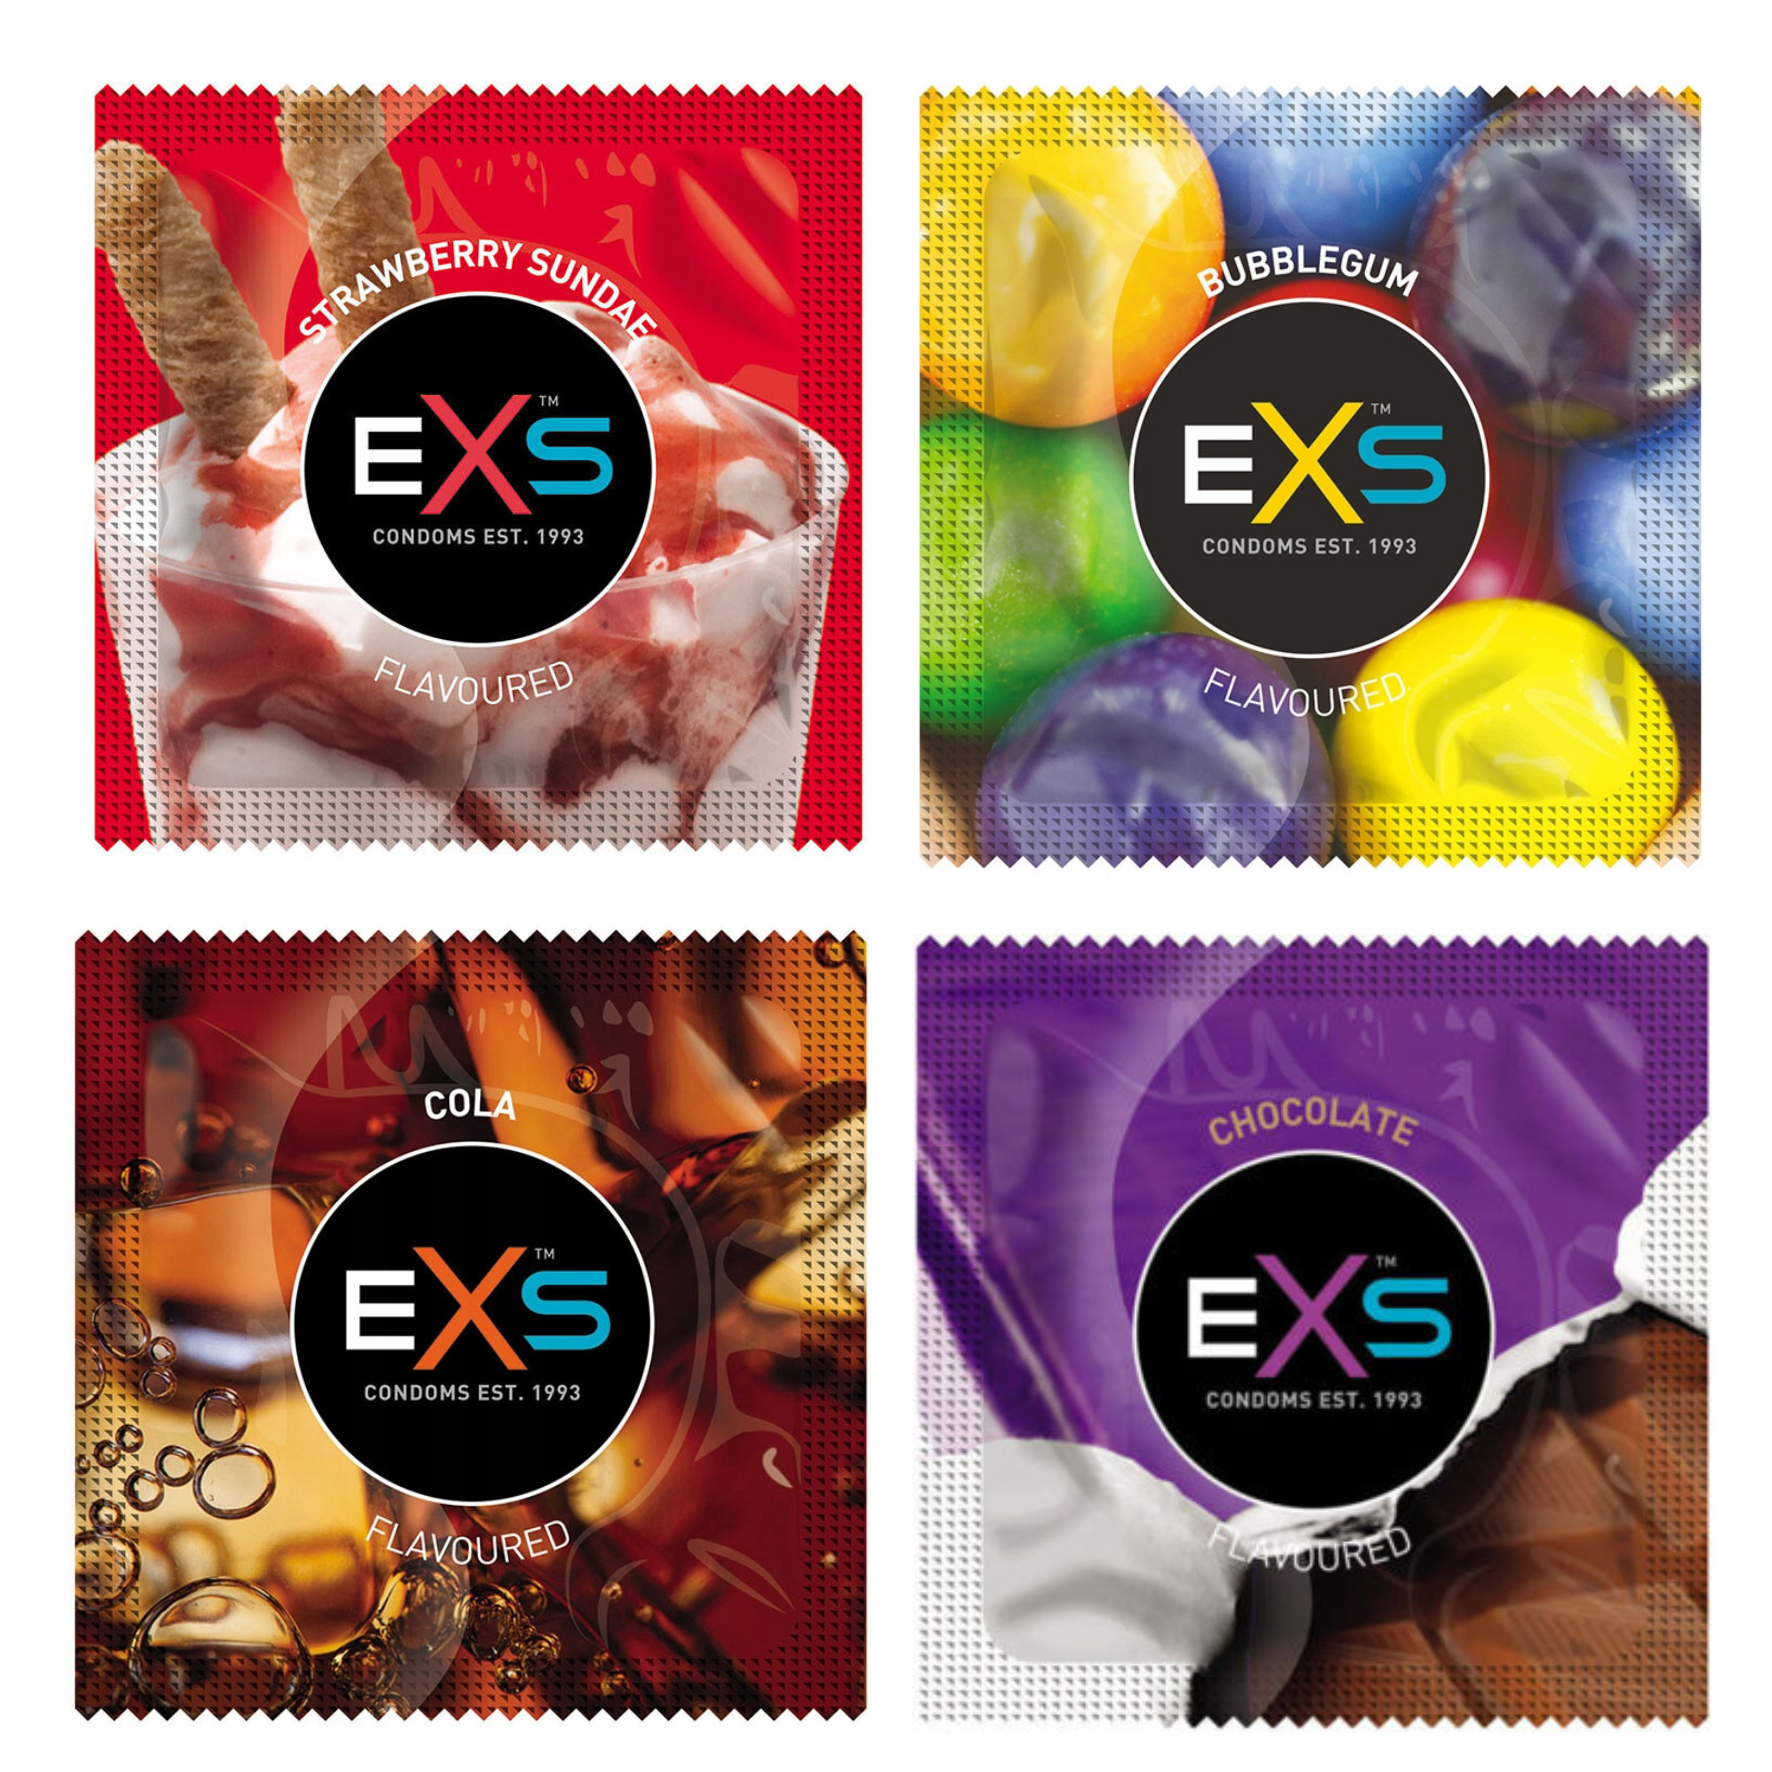 ĮVAIRIŲ SKONIŲ IR KVAPŲ PREZERVATYVŲ RINKINYS "EXS MIXED FLAVOURED" - 12 VNT.  
"EXS Mixed Flavoured" - prezervatyvų rinkinys  sudarytas iš skirtingą skonį bei kvapą turinčių prezervatyvų: 
"EXS Crazy Cola"  (3 vnt.) - kolos skonio ir kvapo prezervatyvai; 
"EXS Strawberry Sundae"  (3 vnt.) - braškinių ledų skonio ir kvapo prezervatyvai; 
"EXS Hot Chocolate"  (3 vnt.) - šokolado skonio ir kvapo prezervatyvai; 
"EXS Bubblegum" (3 vnt.) - kramtomosios gumos skonio ir kvapo prezervatyvai. 
Šie prezervatyvai  idealiai tinka oraliniam, vaginaliniam ir analiniam seksui  ir  yra griežtai  išbandyti pagal Europos ir Britų standartų instituto (BSI) standartus. 
Visų jų plotis:  56 mm 
Prieš užsidėdami prezervatyvą įsitikinkite, kad jūsų varpa neliečia partnerio lytinių organų srities – sperma iš varpos gali išeiti dar prieš pilną ejakuliaciją.  
*Atminkite, kad nė viena kontraceptinė priemonė nėra 100 % veiksminga nuo nėštumo, ŽIV ar lytiškai plintančių infekcijų.  